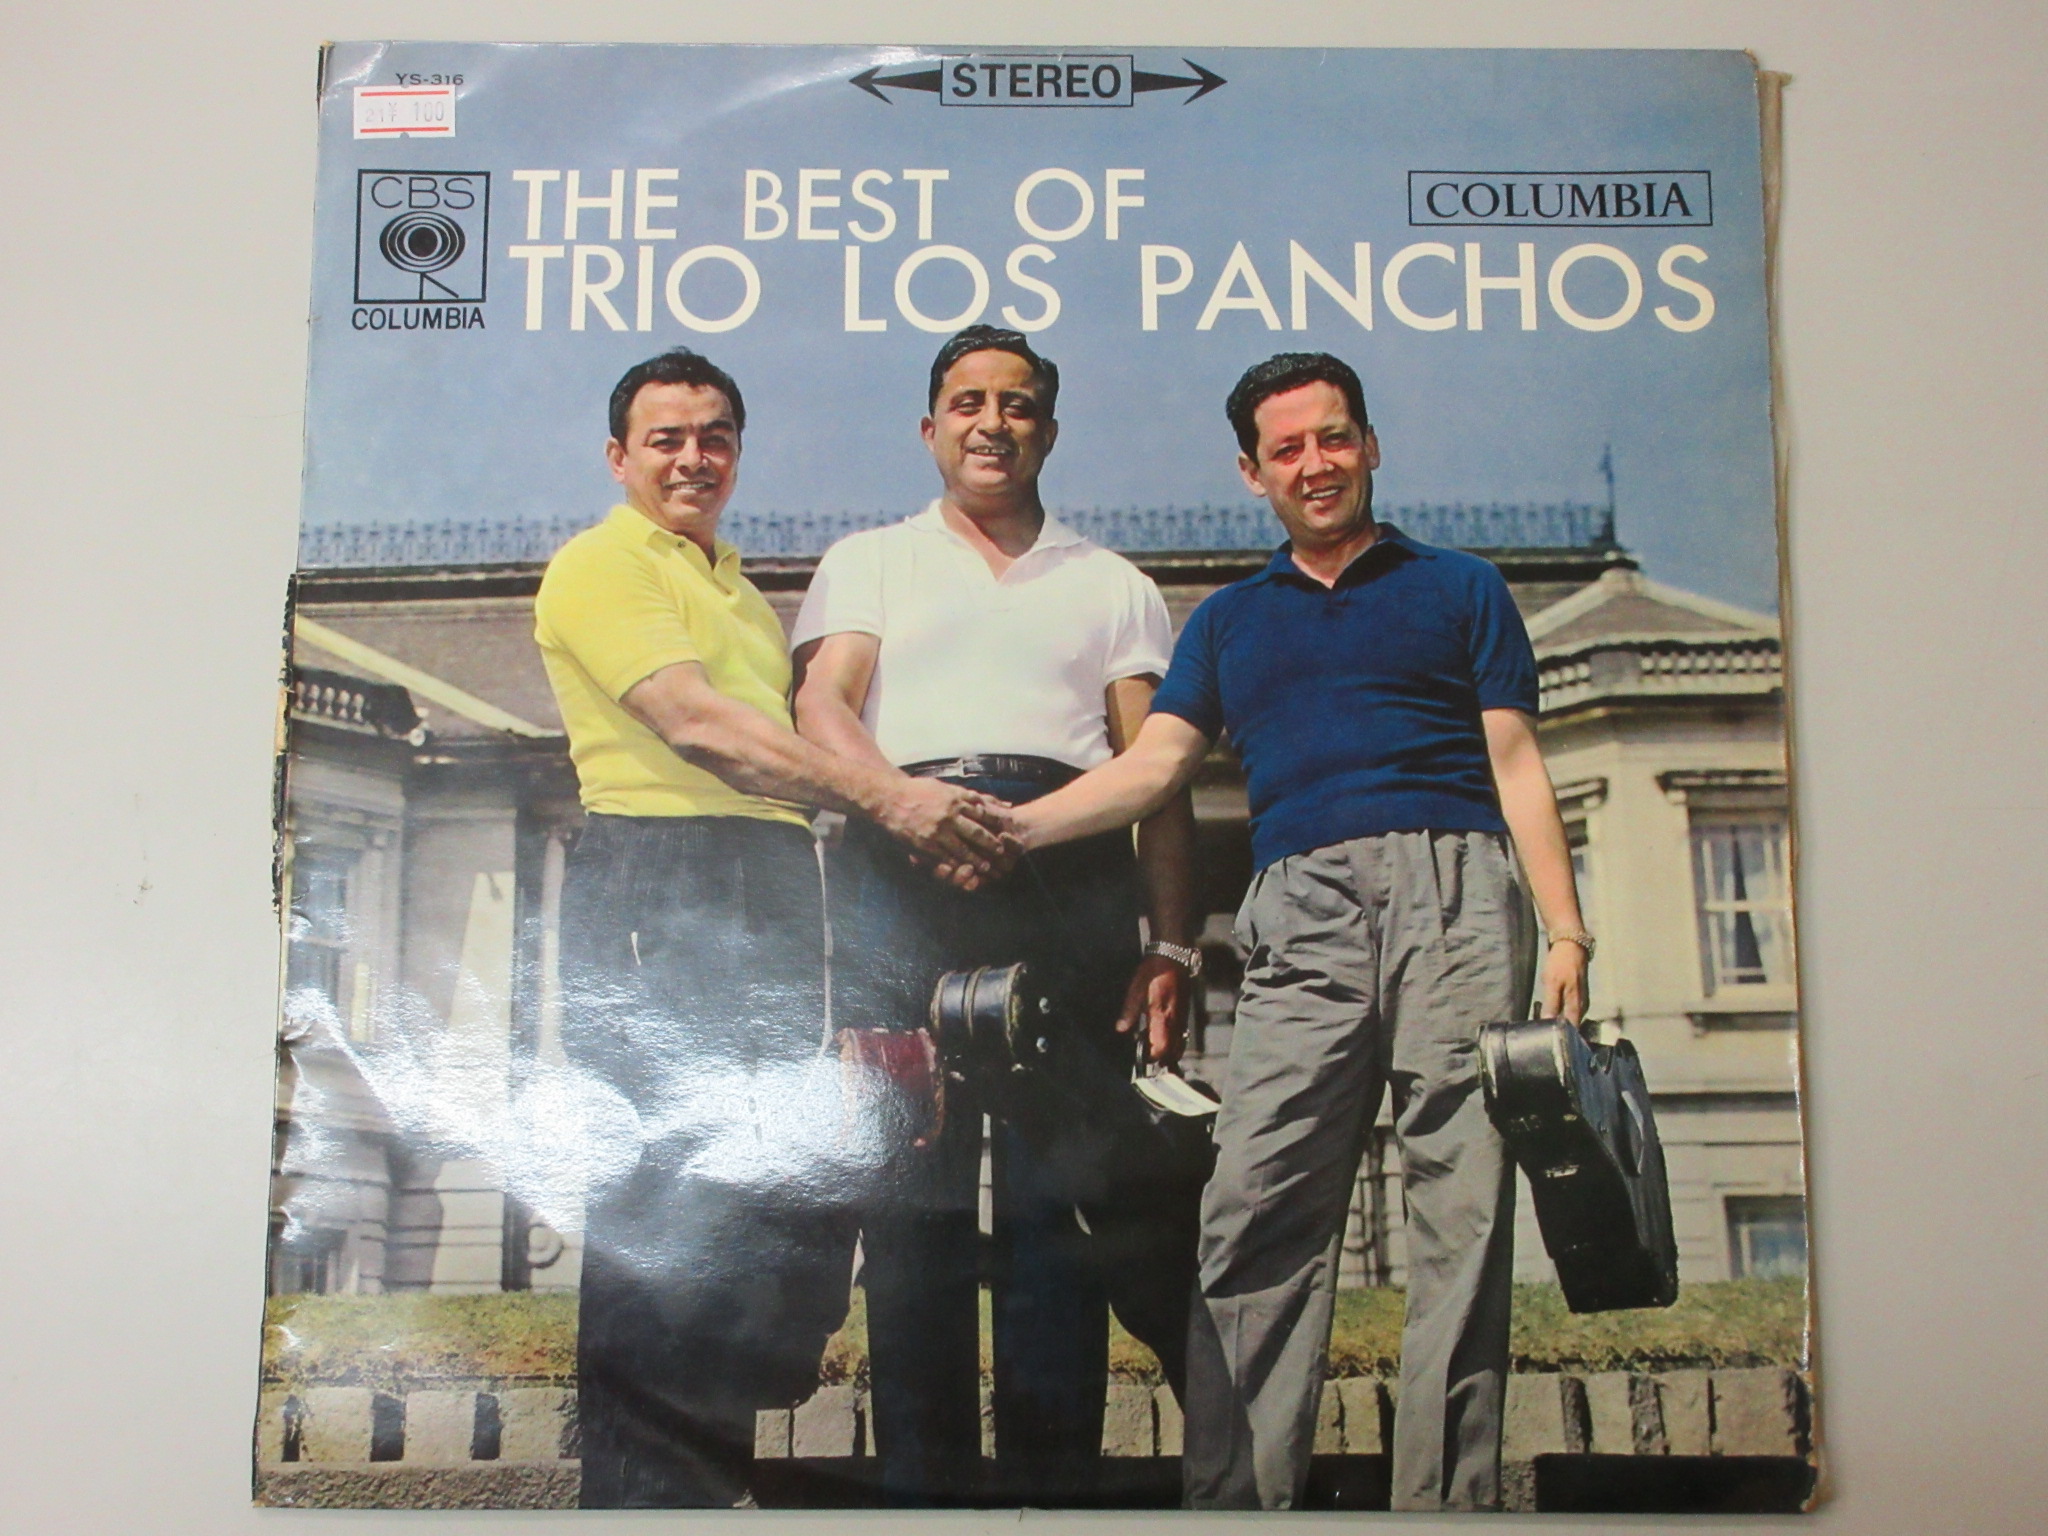 The Best of Trio Los Panchos[YS-316]